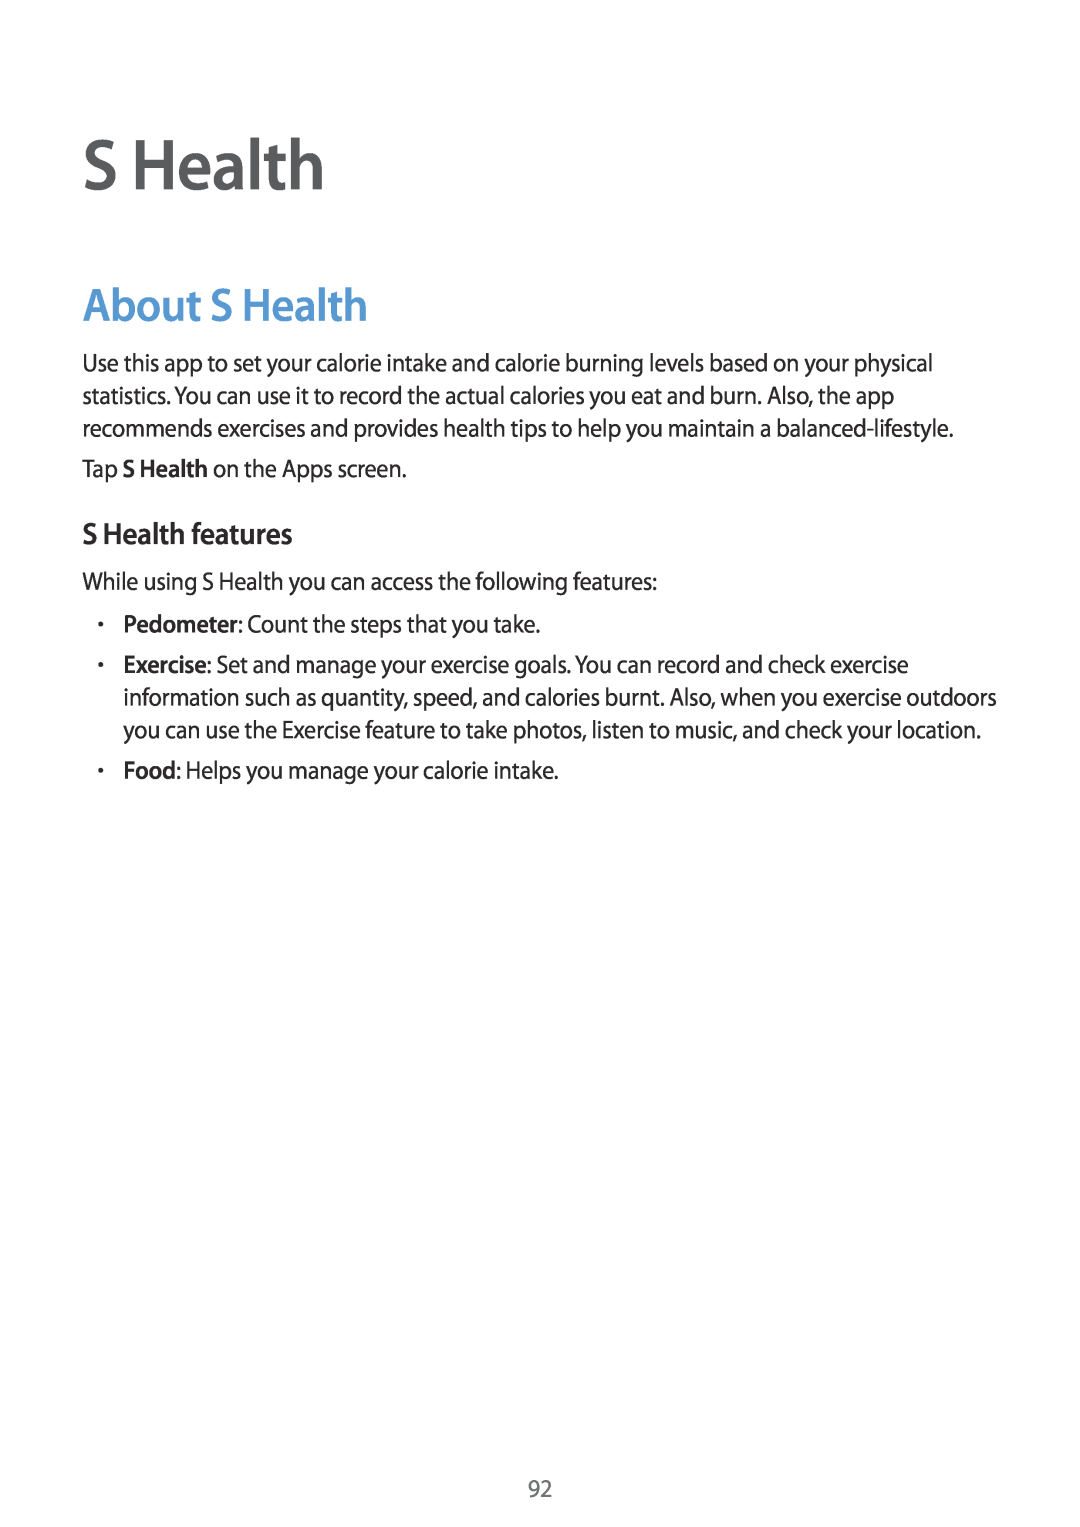 Samsung SM-G901FZKABAL, SM-G901FZKACOS, SM-G901FZDABAL, SM-G901FZWAVGR, SM-G901FZWADBT About S Health, S Health features 